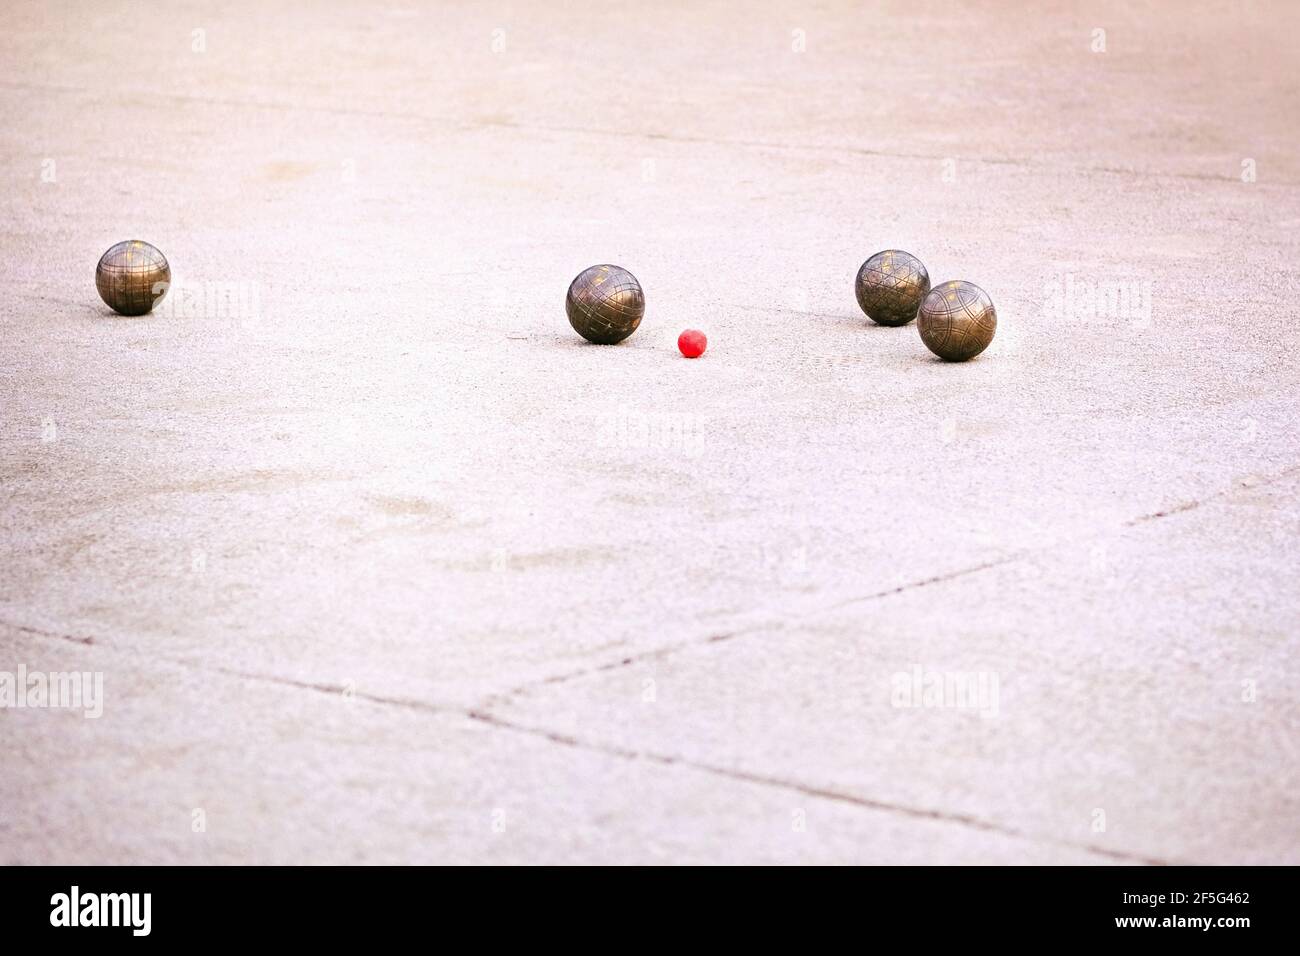 Petanque Spiel, metallische Petanque Bälle und kleine rote Bube. Stockfoto